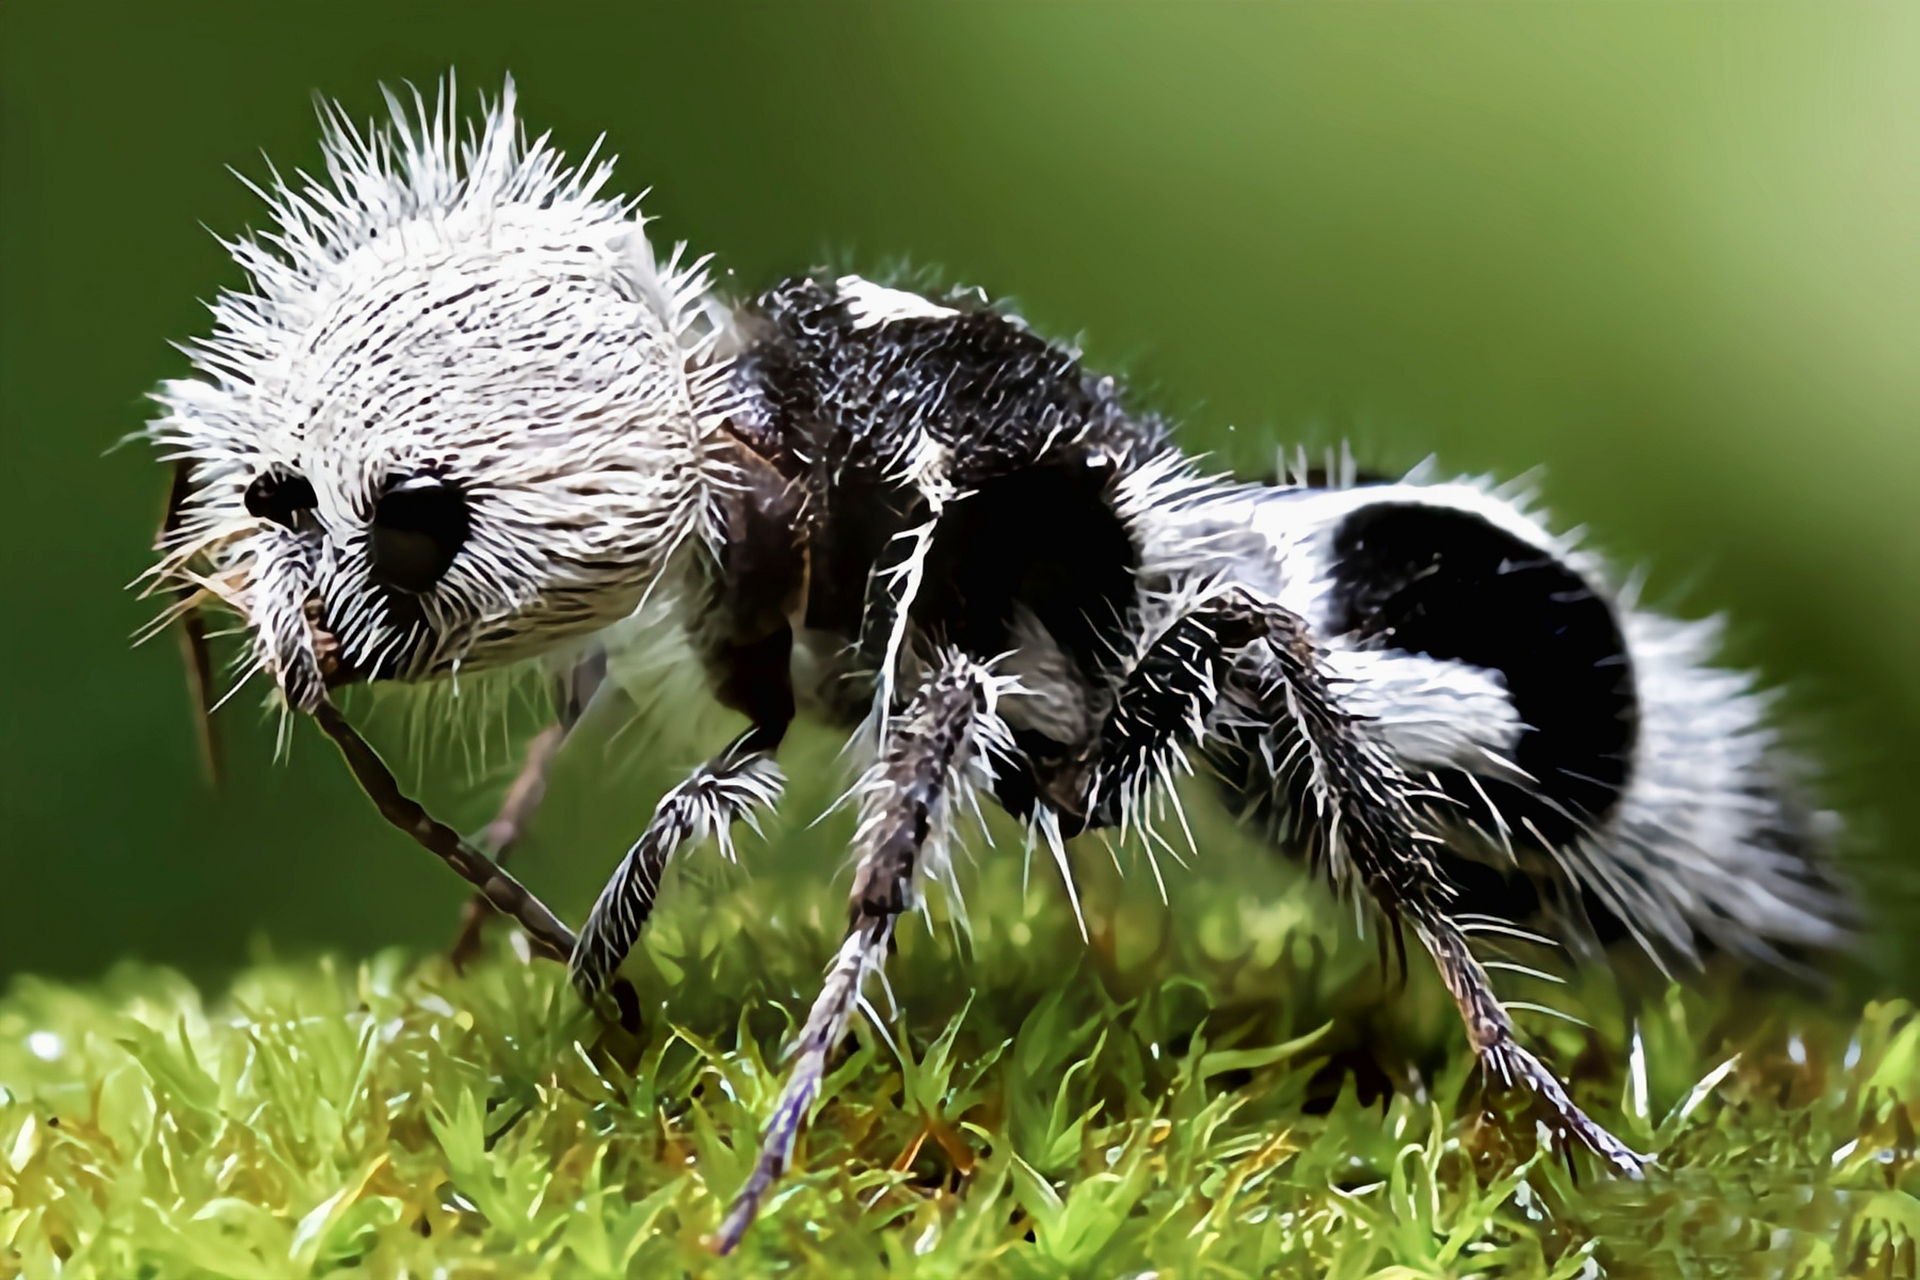 每天认识一种昆虫——熊猫蚁 熊猫蚁又熊猫蚂蚁,是膜翅目,蚁蜂科昆虫